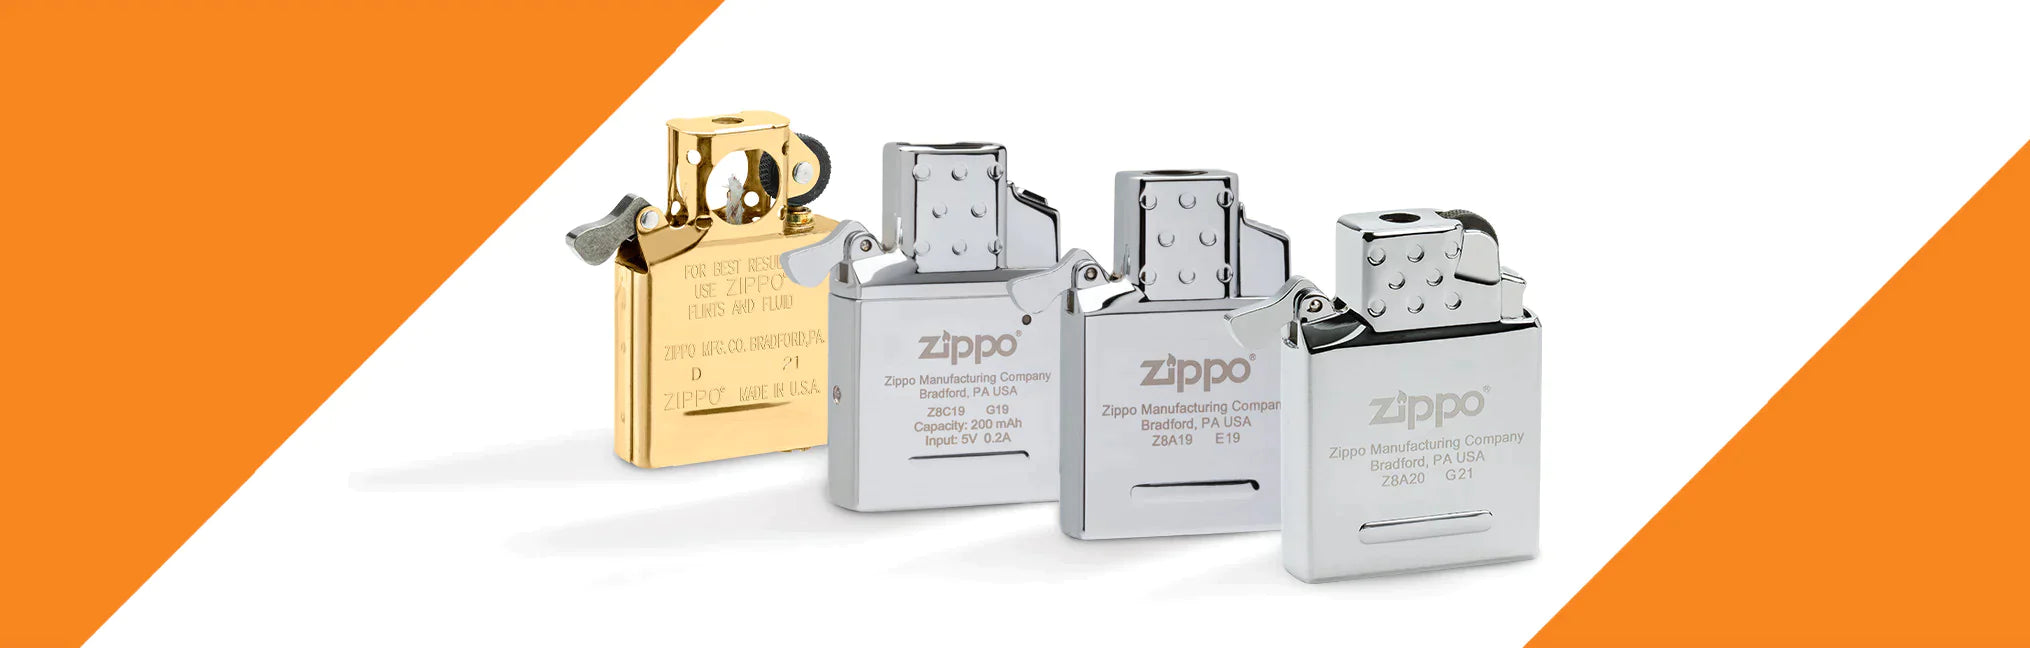 Zippo - Pack Insert Double Flamme Tempête et 2 x Gaz Butane pour Briquet  Zippo - Cendriers - Rue du Commerce